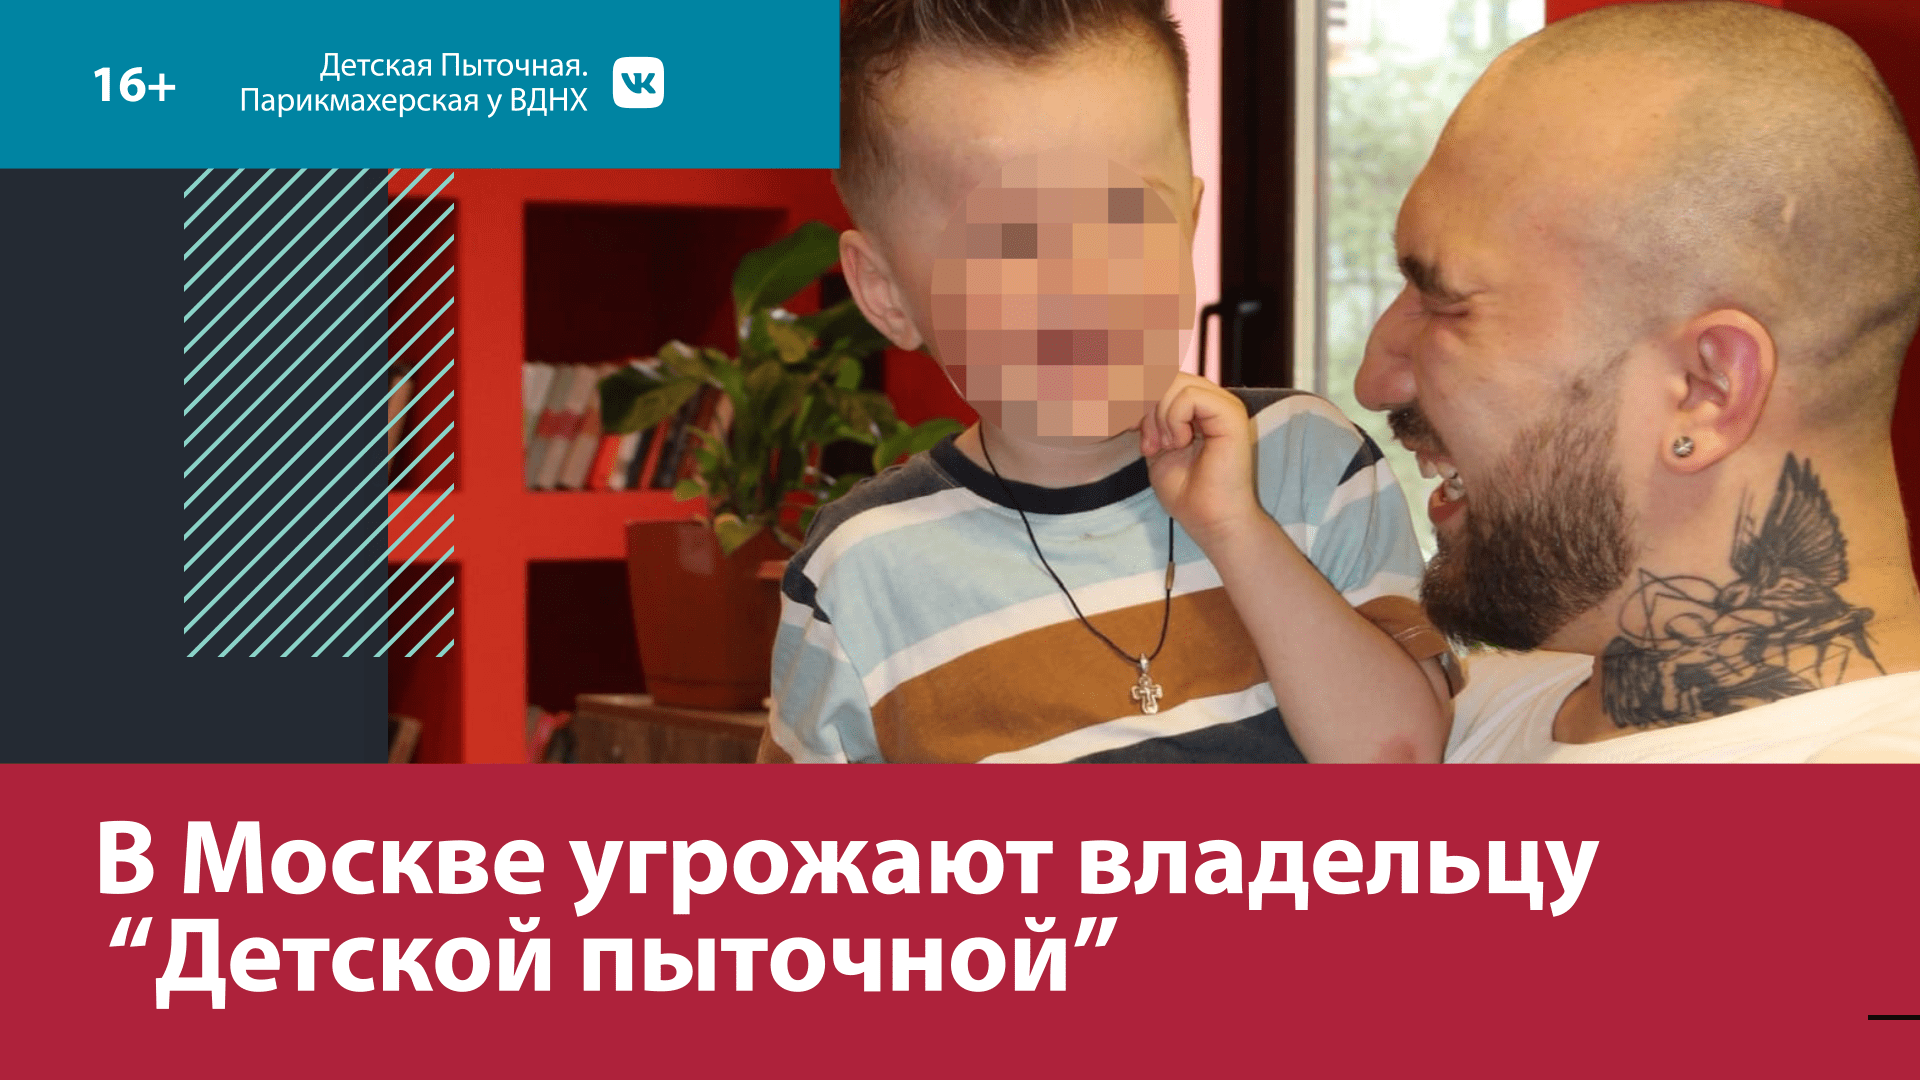 К владельцу детской парикмахерской с угрозами пришли религиозные активисты — Москва FM